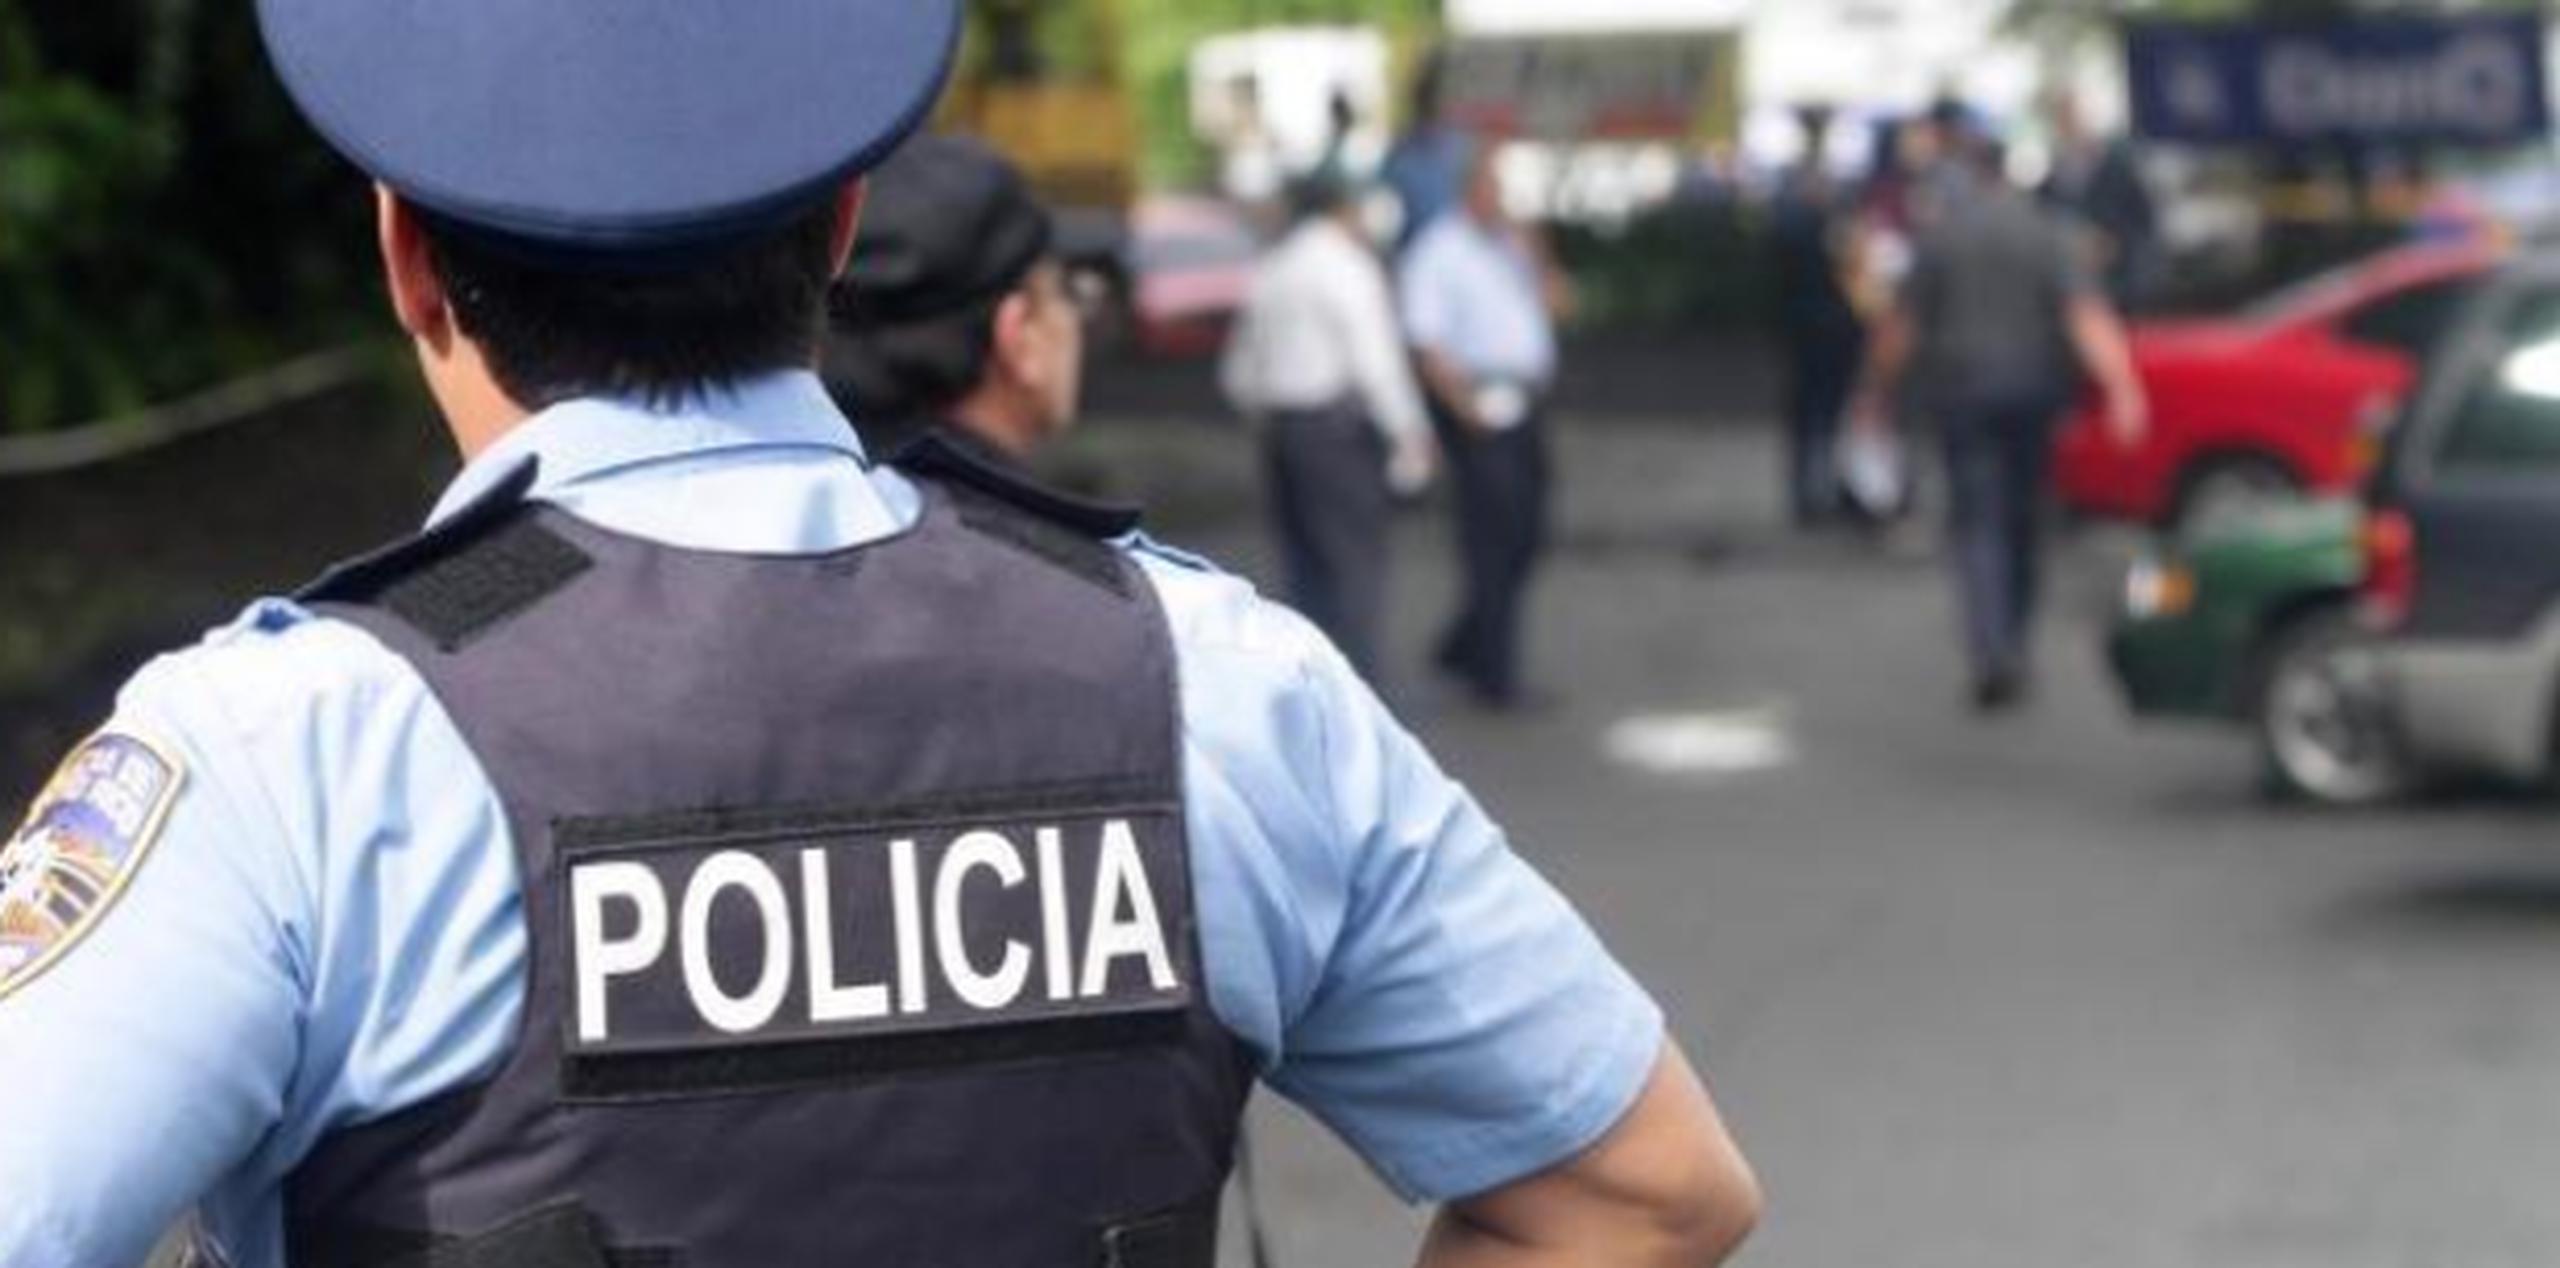 El arrestado fue identificado como Roberto Jiménez Vicentí, de 39 años, alias Pichón y residente del barrio La Luna en Guánica.